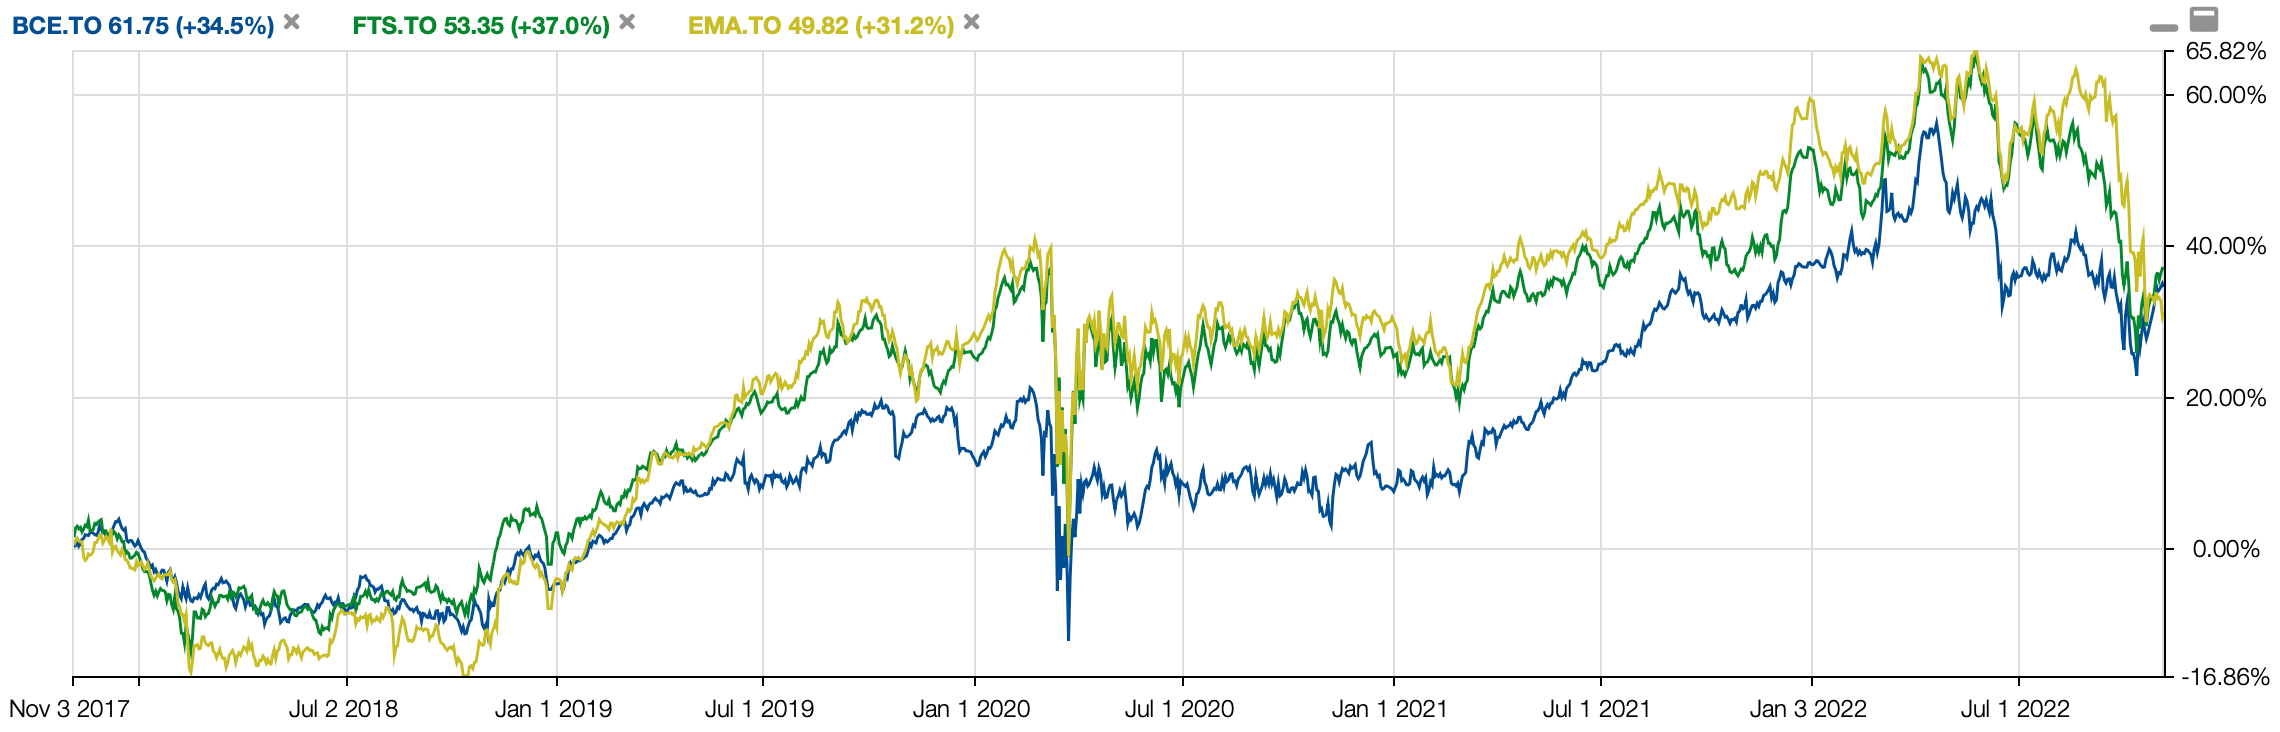 BCE vs EMA vs FTS Dividends